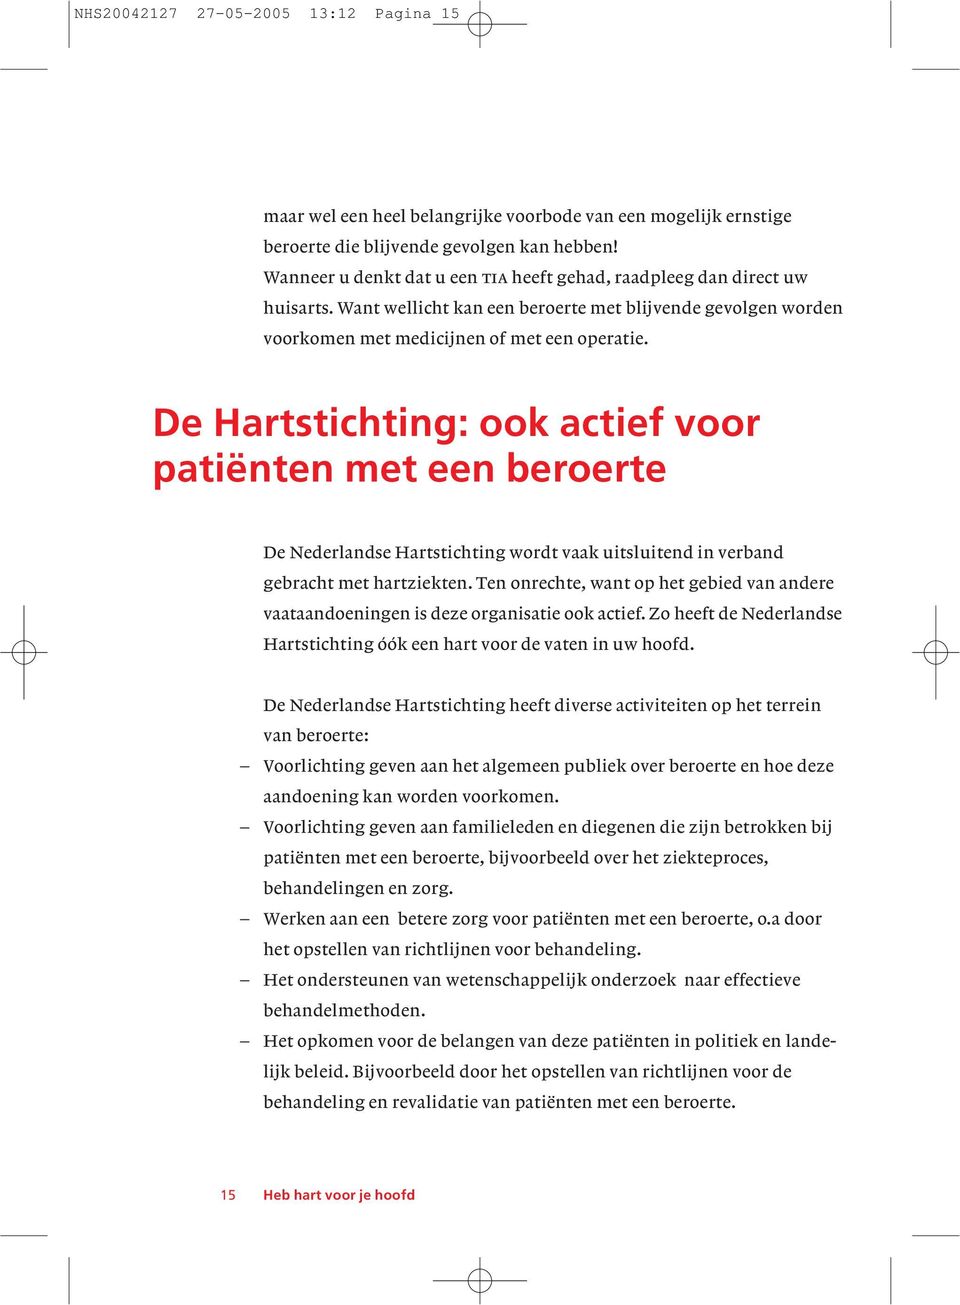 De Hartstichting: ook actief voor patiënten met een beroerte De Nederlandse Hartstichting wordt vaak uitsluitend in verband gebracht met hartziekten.